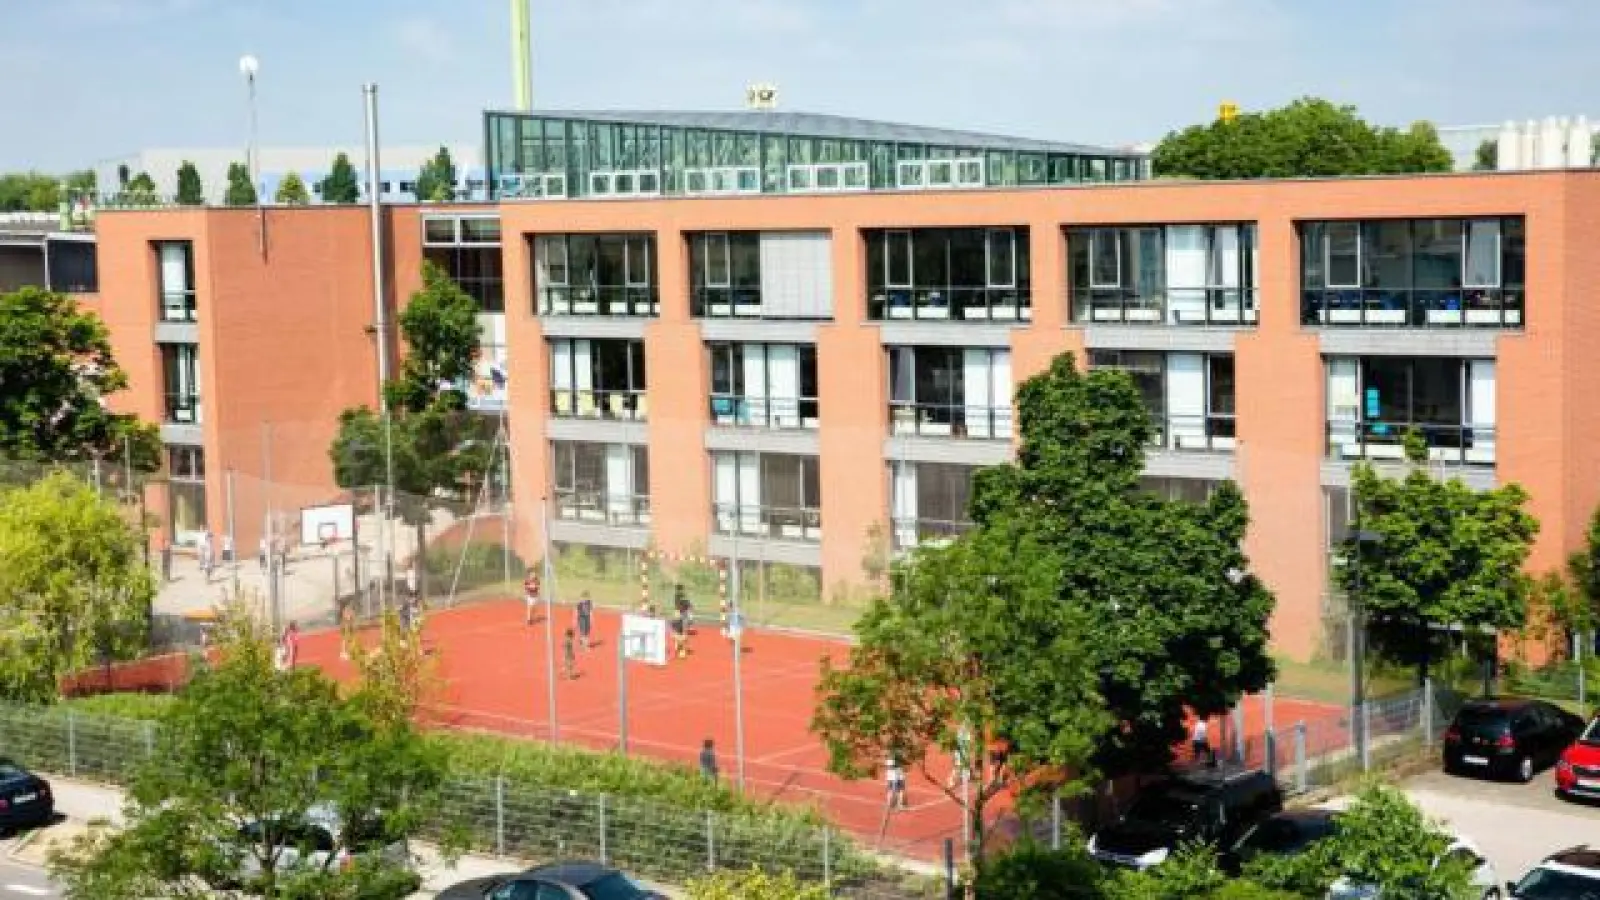 Das Schulgebäude   der International School Augsburg soll in Zukunft um einen neuen Campus am Gersthofer Bahnhof erweitert werden.	Foto: International School Augsburg (Foto: International School Augsburg)